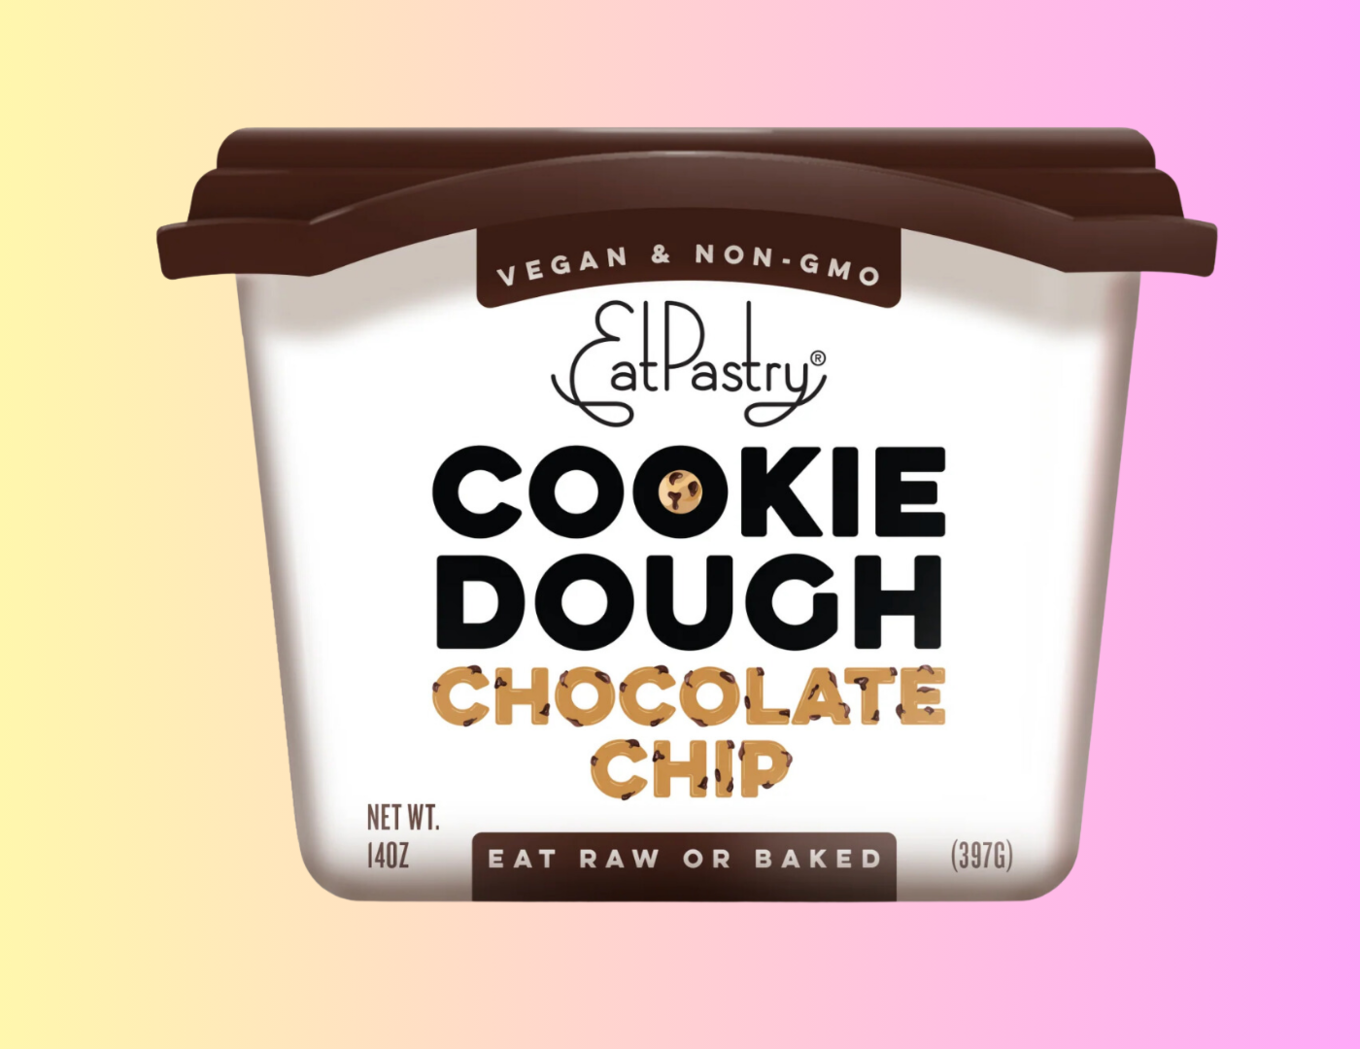 VegNews.cookiedoughchocolatechipp.eatpastry